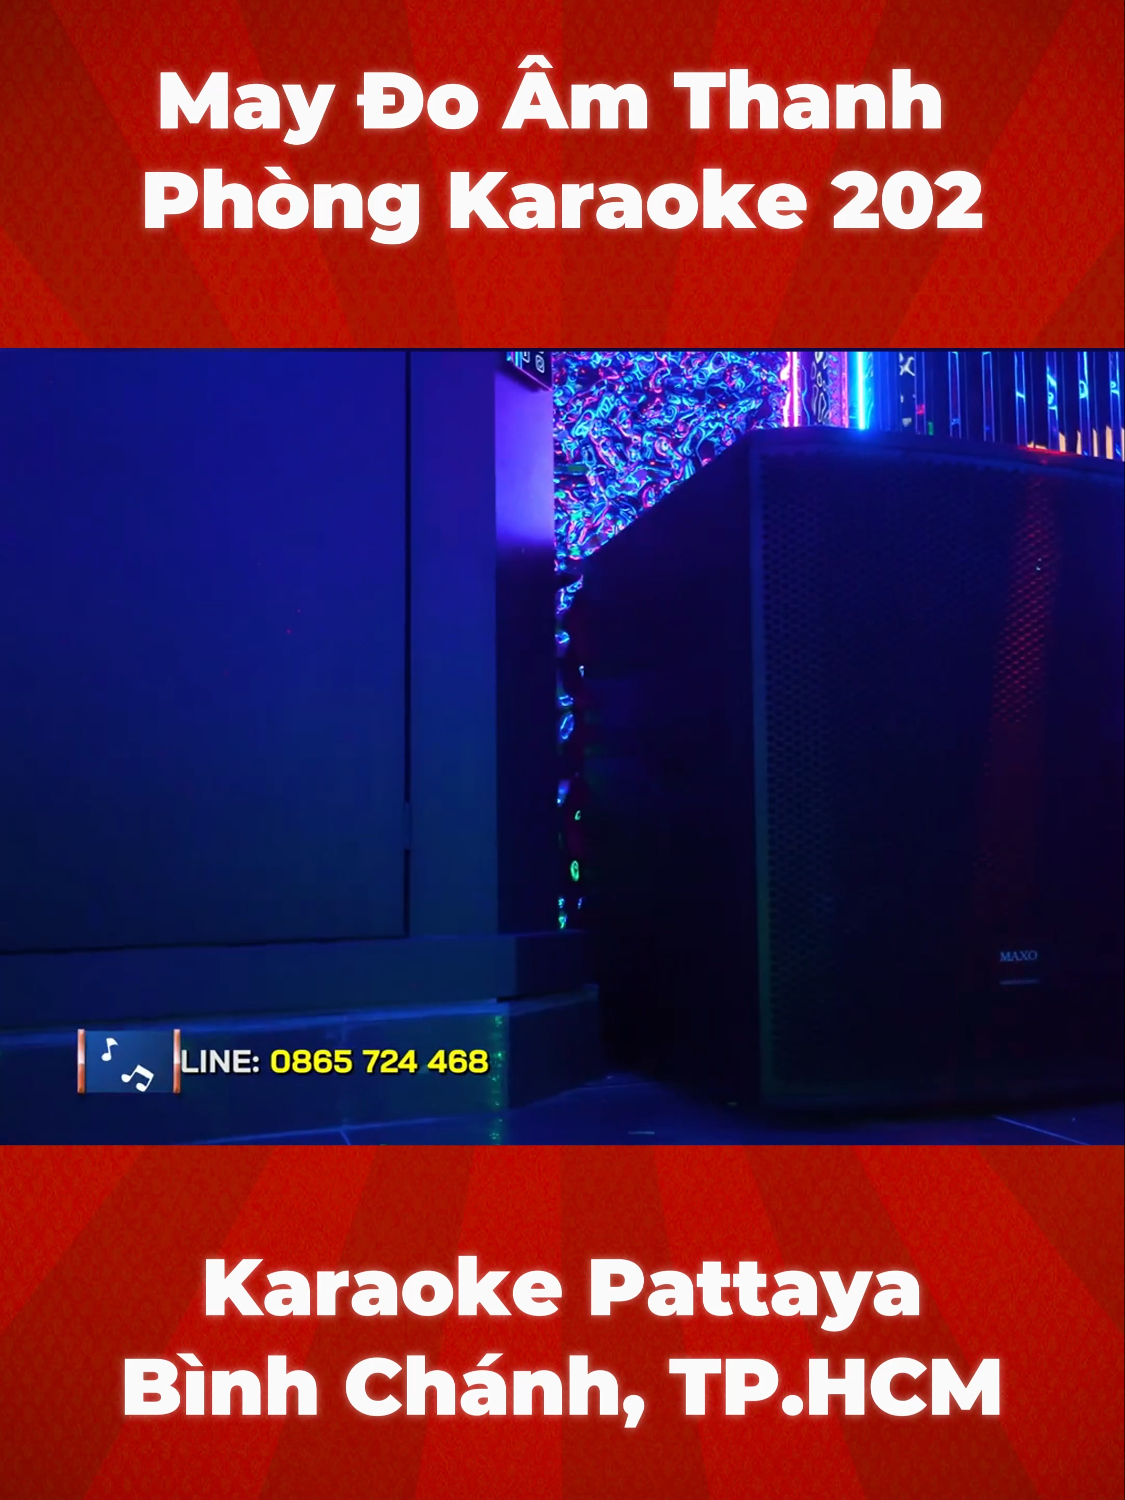 Giữa tuần lên kèo hát quên lối về tại căn phòng 202 karaoke Pattaya Trung Sơn. Sở hữu phong cách sang trọng, lung linh với hiệu ứng LED ốp tường, phủ kín cả trần phòng sẽ khiến bạn vô cùng choáng ngợp nhưng vẫn ấm cúng trong không gian 35m2 cho sức chứa lên đến 20 người. #maxo #maxoaudio #maydoamthanh #amthanhkaraoke #karaoke #thietbiamthanh #karaokepattaya #giaitri #binhchanh #hcm #lapdatamthanh  #karaokekinhdoanh